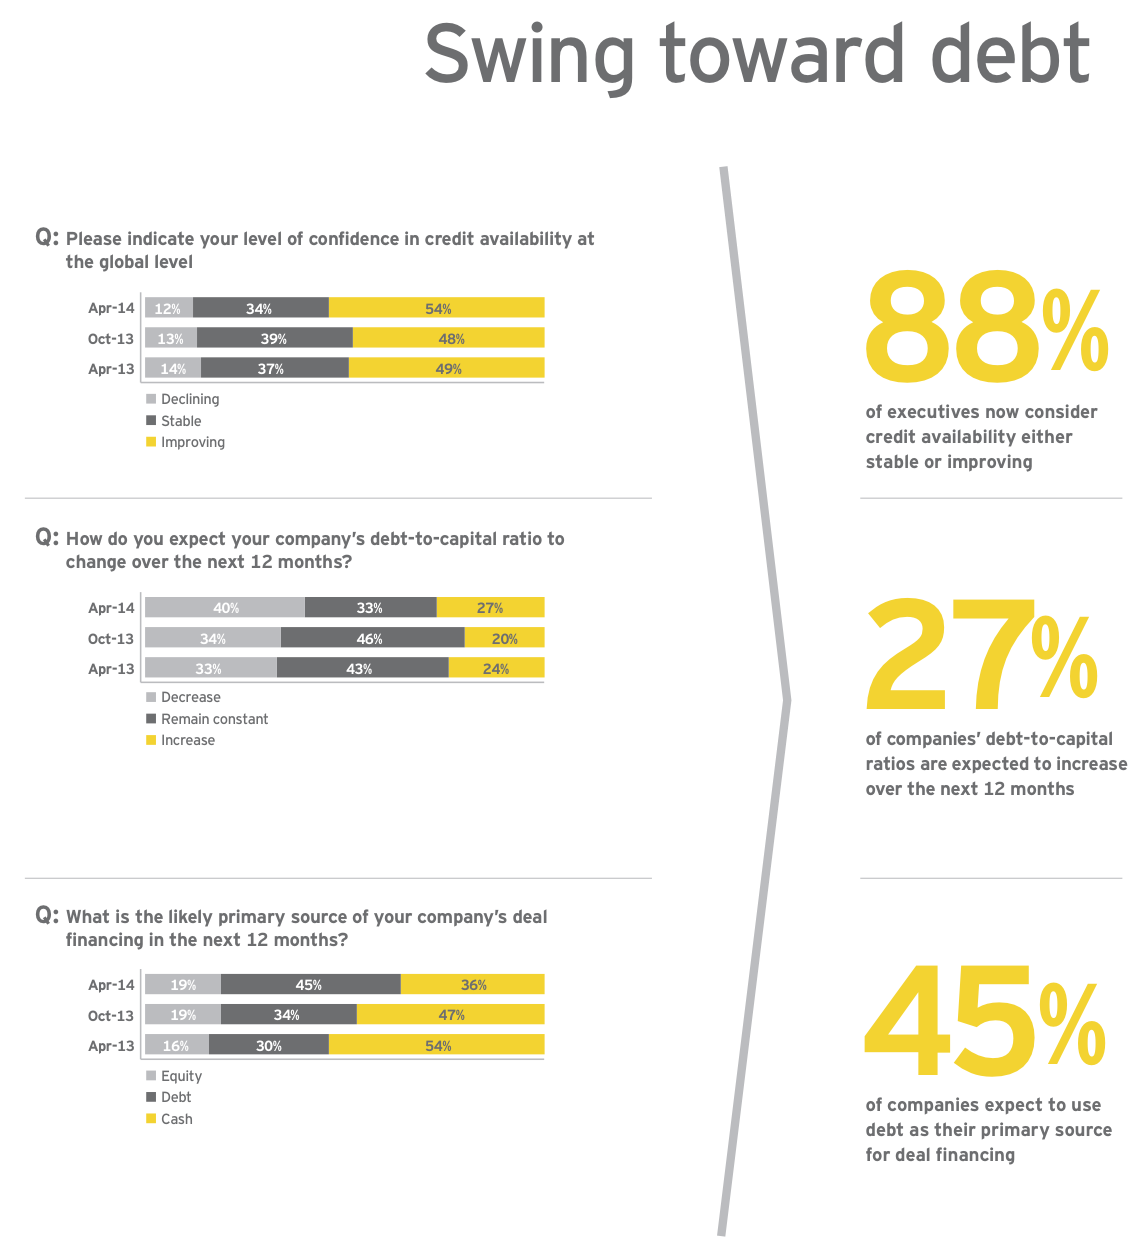 Figure 3: Swing toward debt